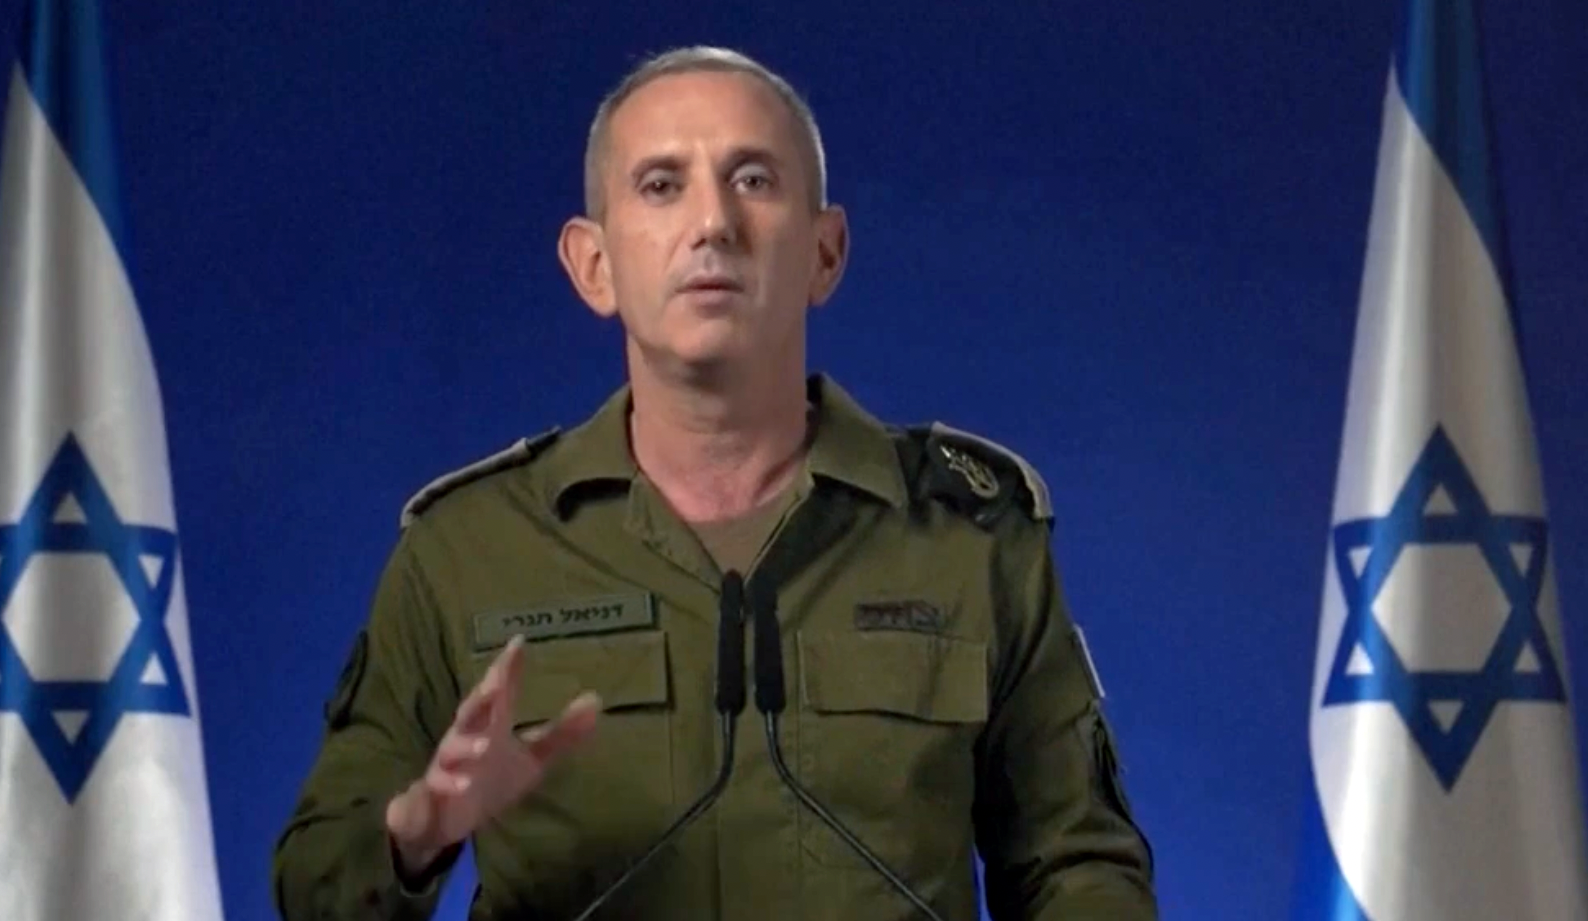 IDF:s talesperson Daniel Hagari gjorde nyss ett uttalande. Han uppmanade allmänheten att följa militärens instruktioner och lyssna efter nya meddelanden från IDF.